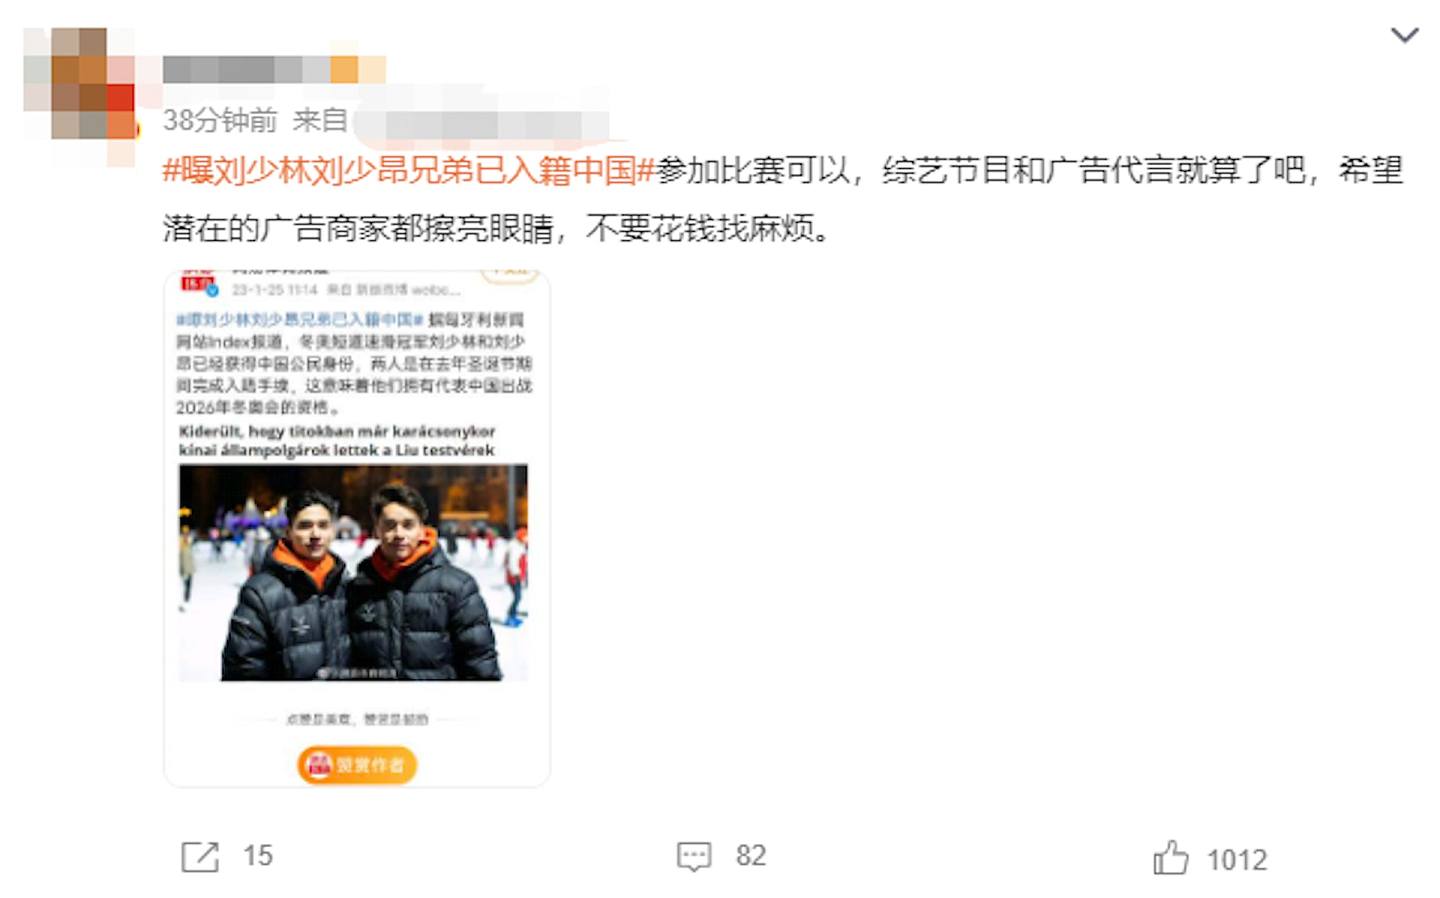 劉氏兄弟入籍中國的消息一出，遭到網民瘋狂抵制。（微博)